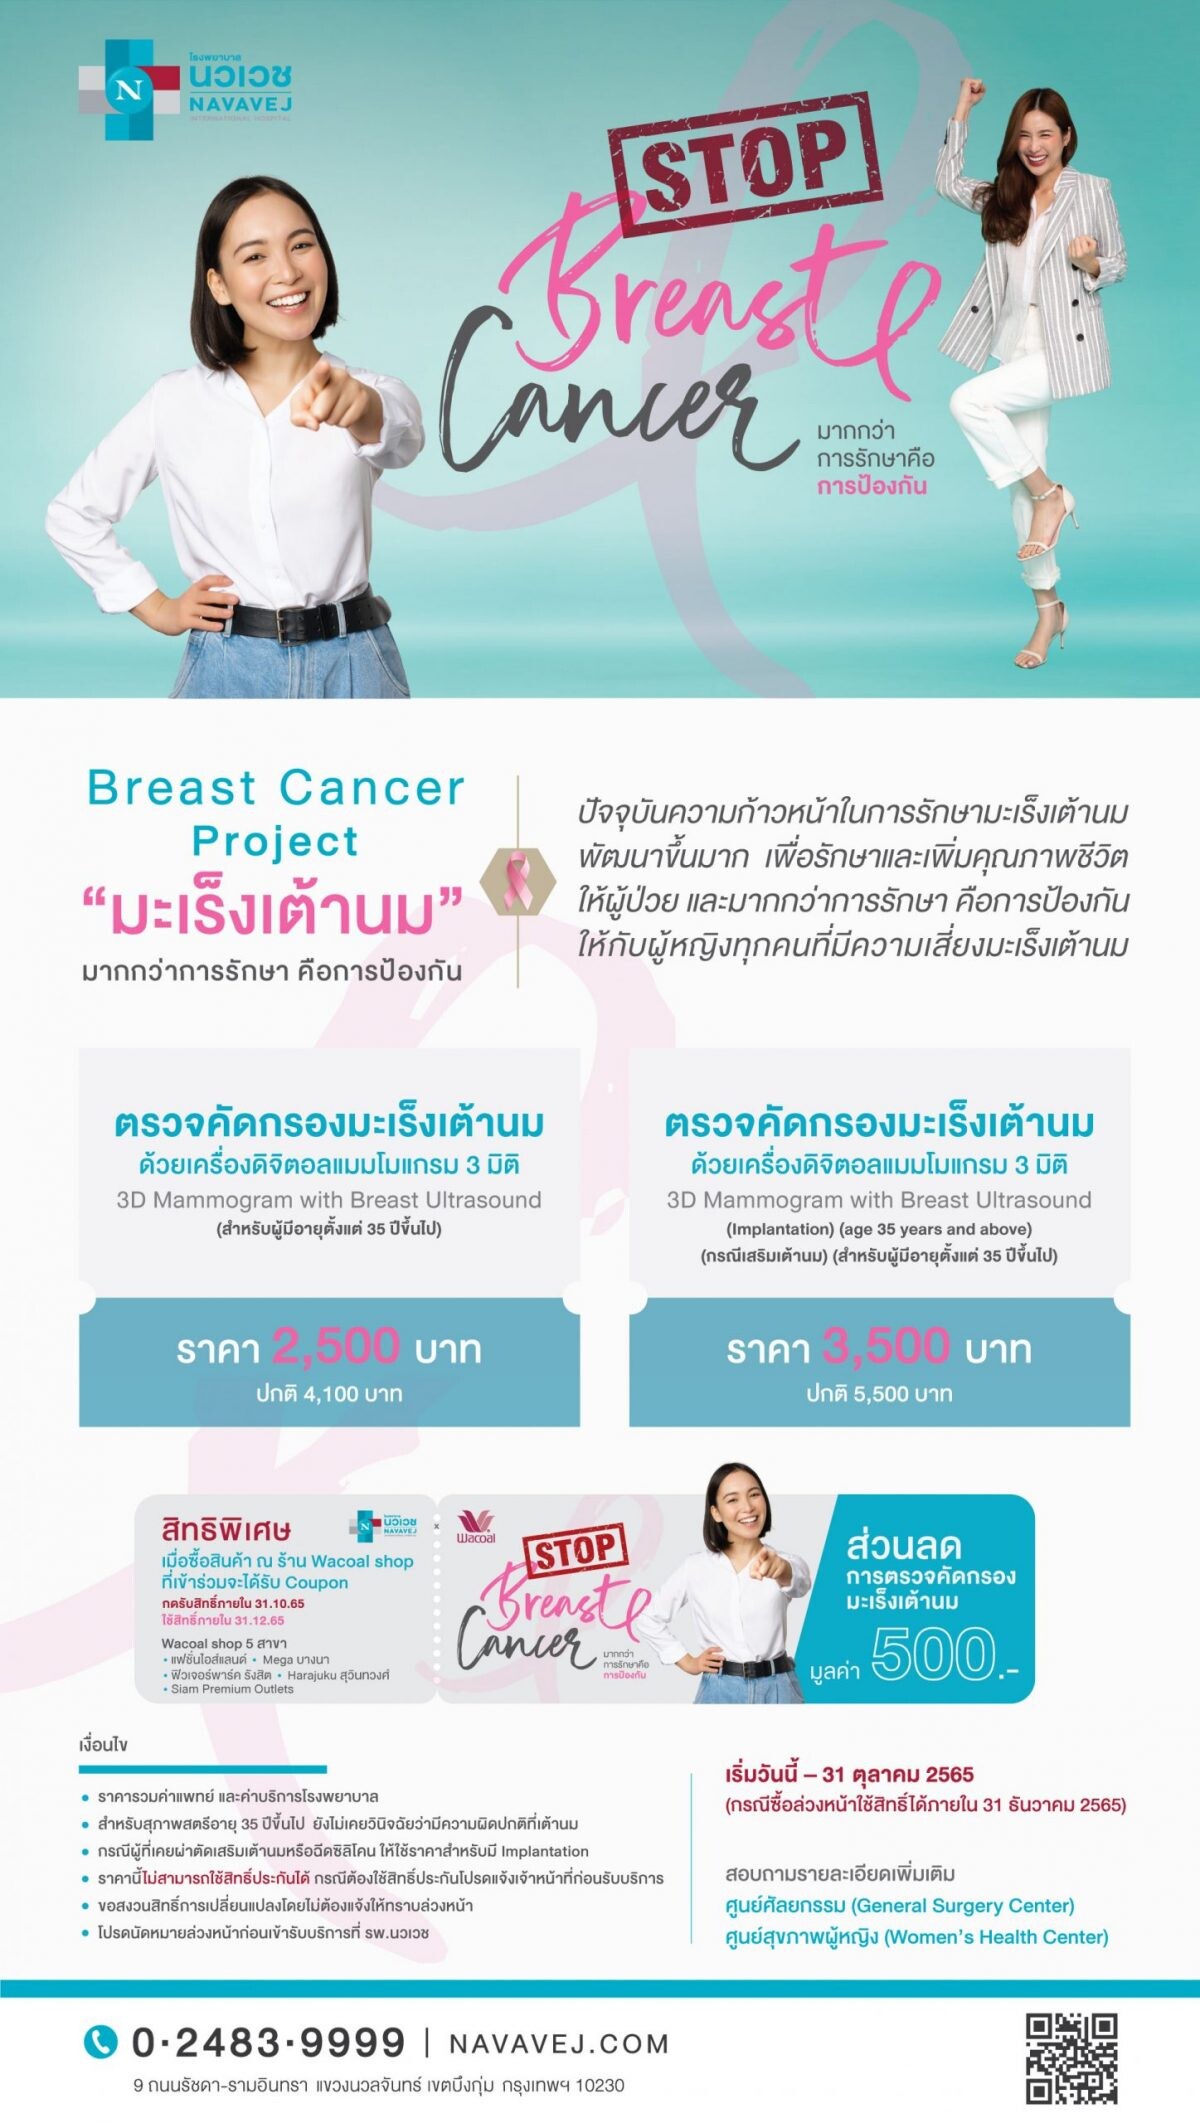 รพ.นวเวช ร่วมกับวาโก้ สนับสนุนผู้หญิงไทยห่างไกลมะเร็งเต้านม มอบคูปองส่วนลดตรวจคัดกรองมะเร็งเต้านม ตลอดเดือนตุลาคม 2565